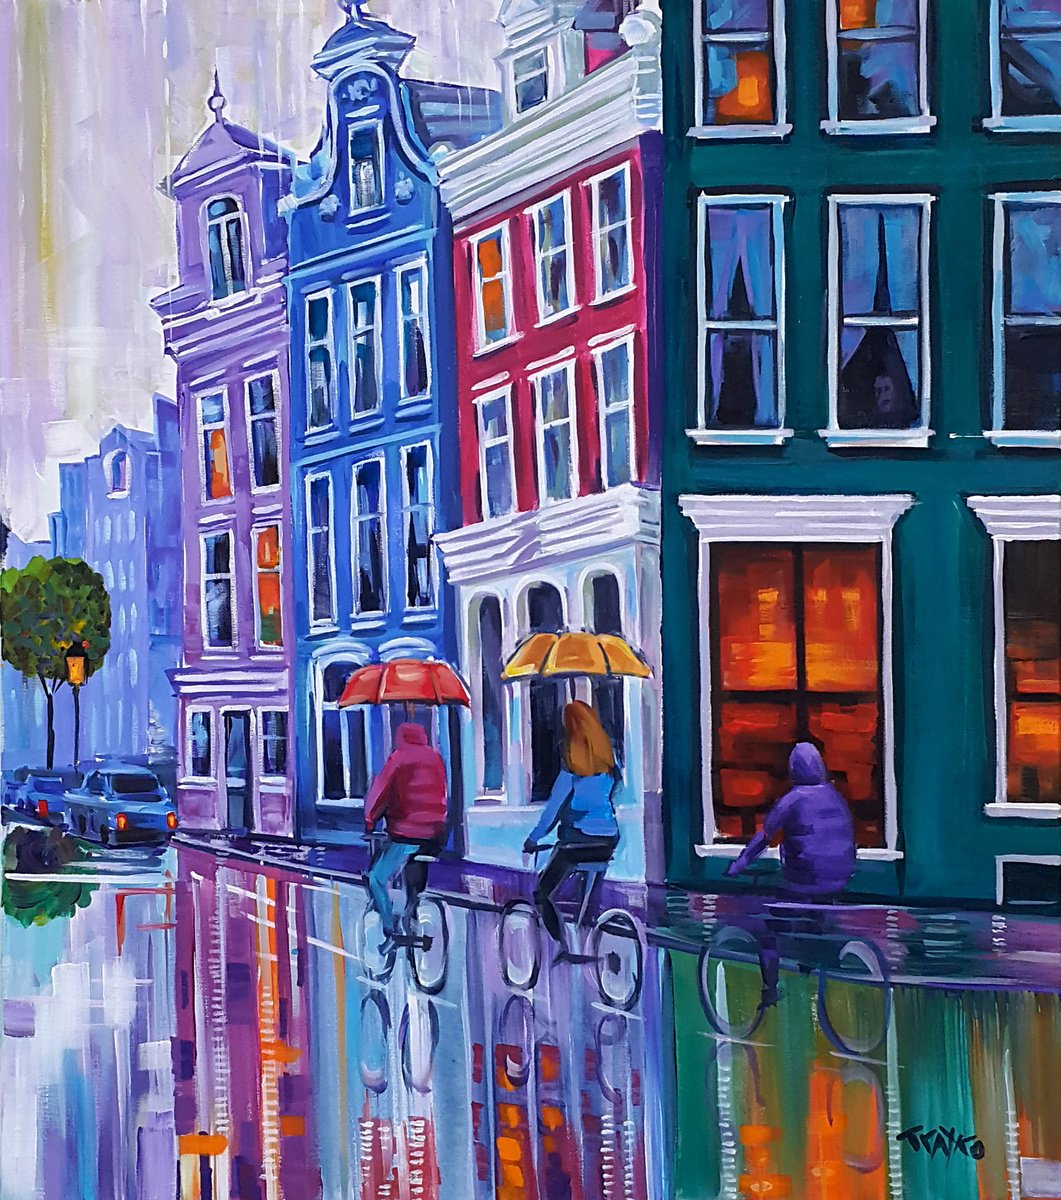 Streets of Amsterdam by Trayko Popov